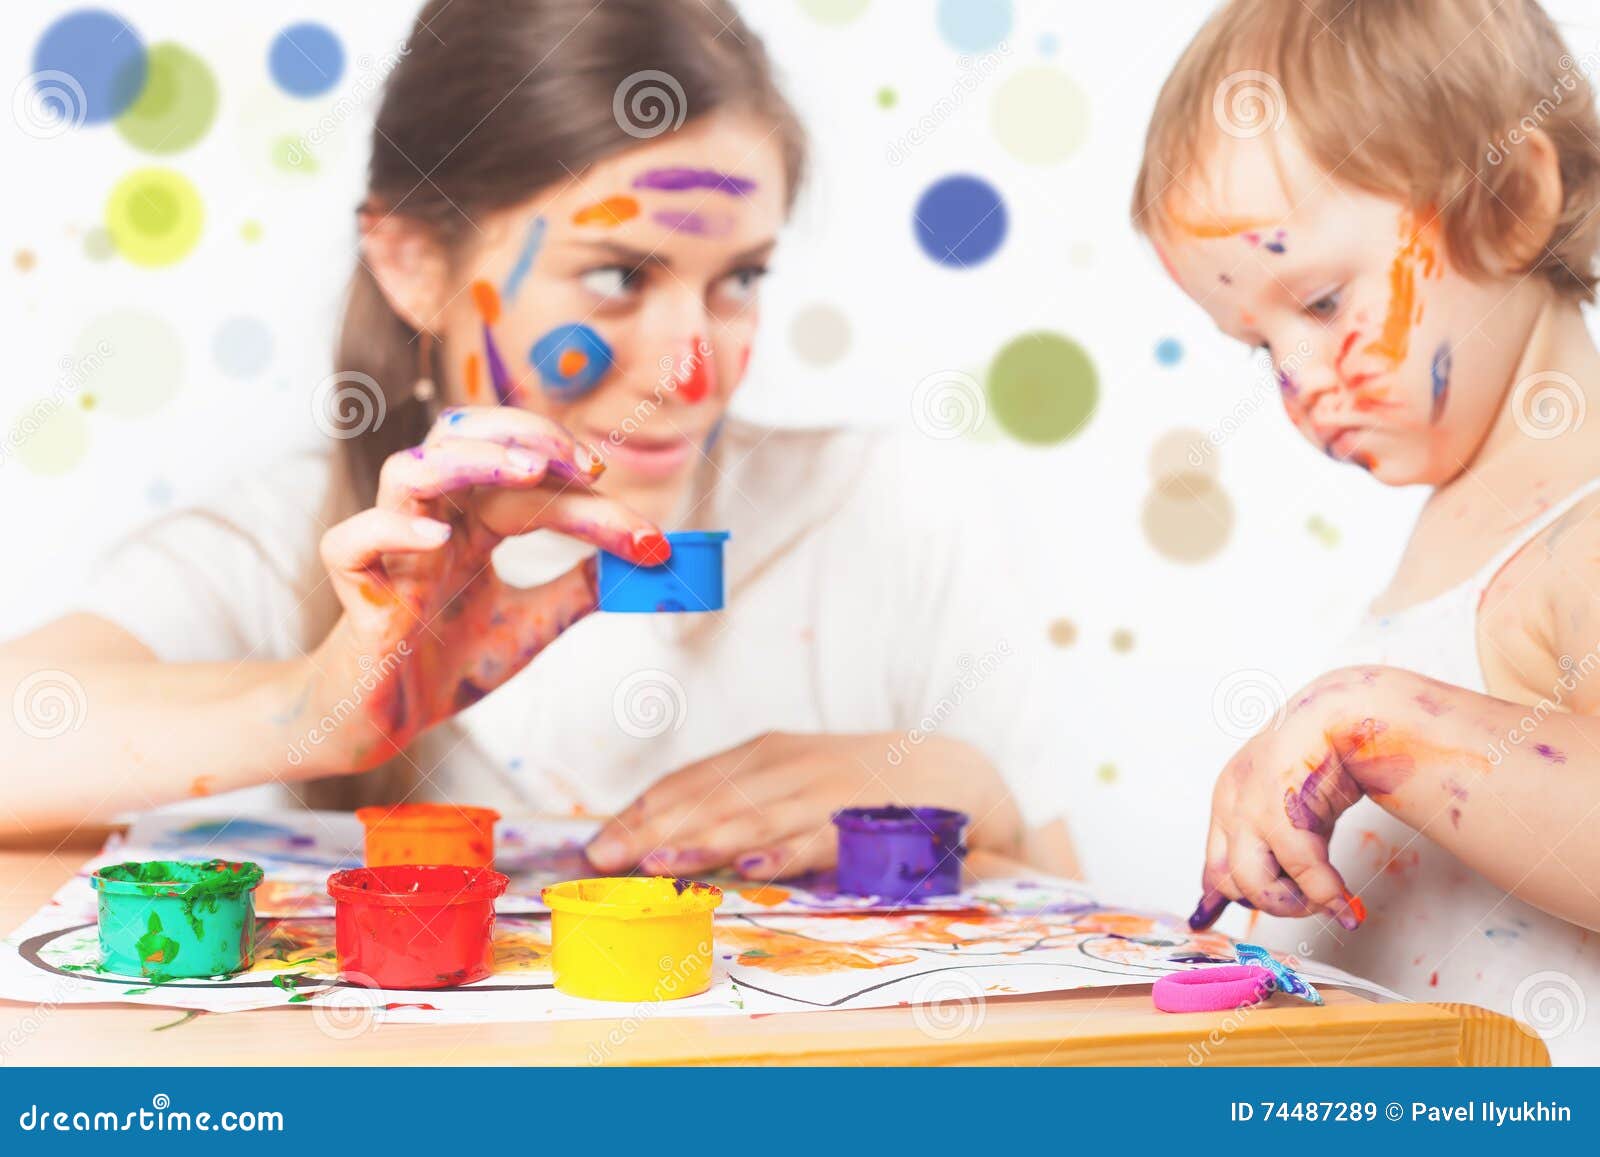 La Maman Et Le Bebe Dessine Avec La Peinture Coloree D Encres Image Stock Image Du Gosses Modifie